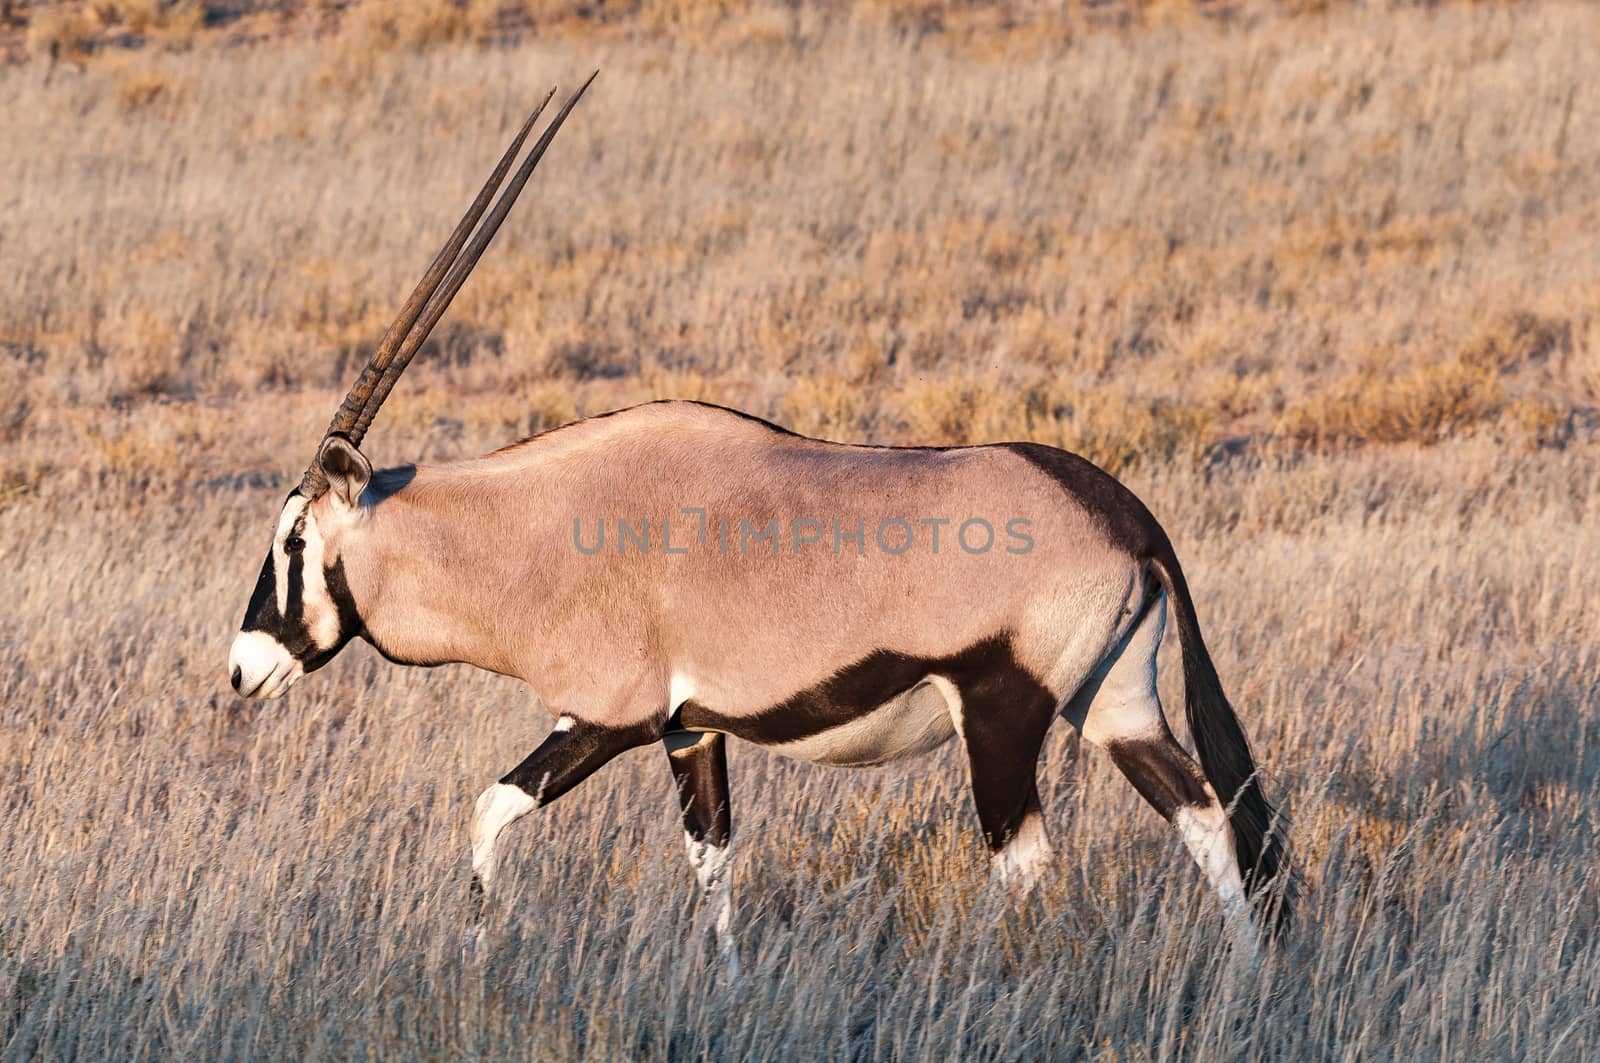 An oryx, Oryx gazella, walking through grass in the arid Kgalagadi